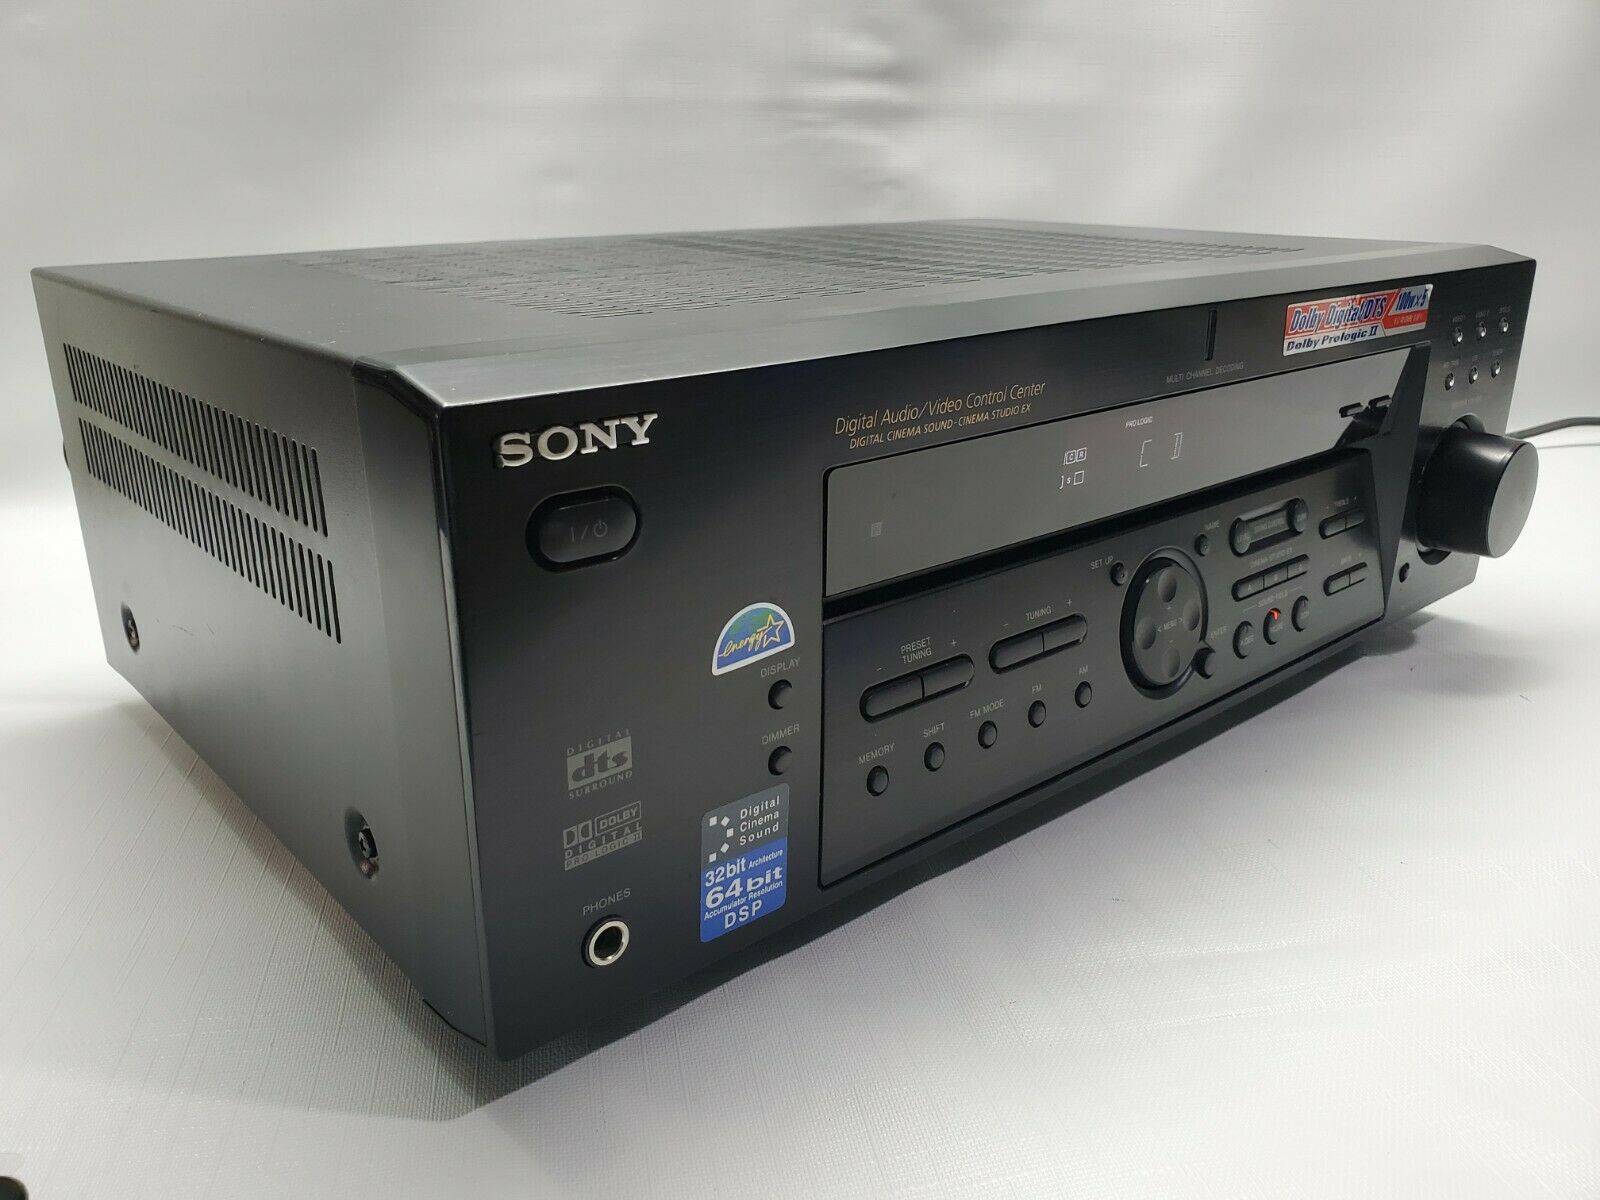 Sony STR-DE585